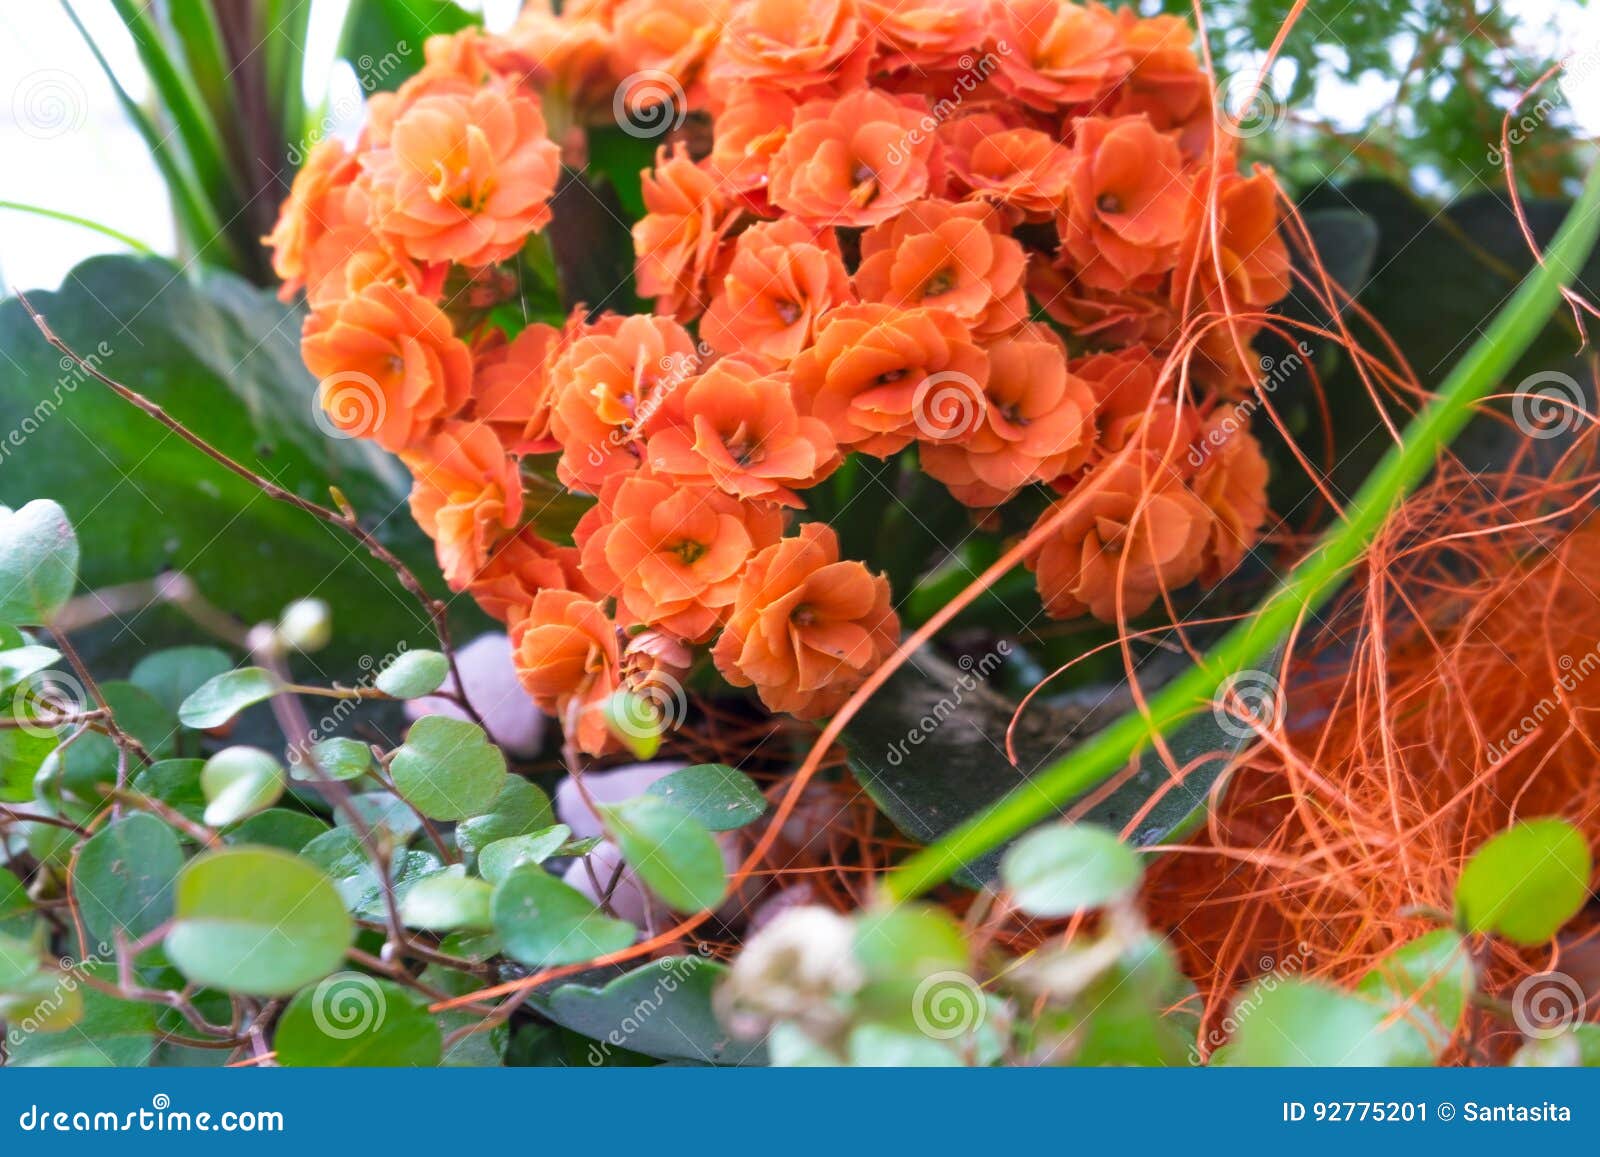 Ikebana mit Kalanchoe mit orange Blumen und Grünblätter und ein anderes Kraut herein. Ikebana mit Kalanchoe mit orange Blumen und Grünblätter und ein anderes Kraut im Korb als Geschenk